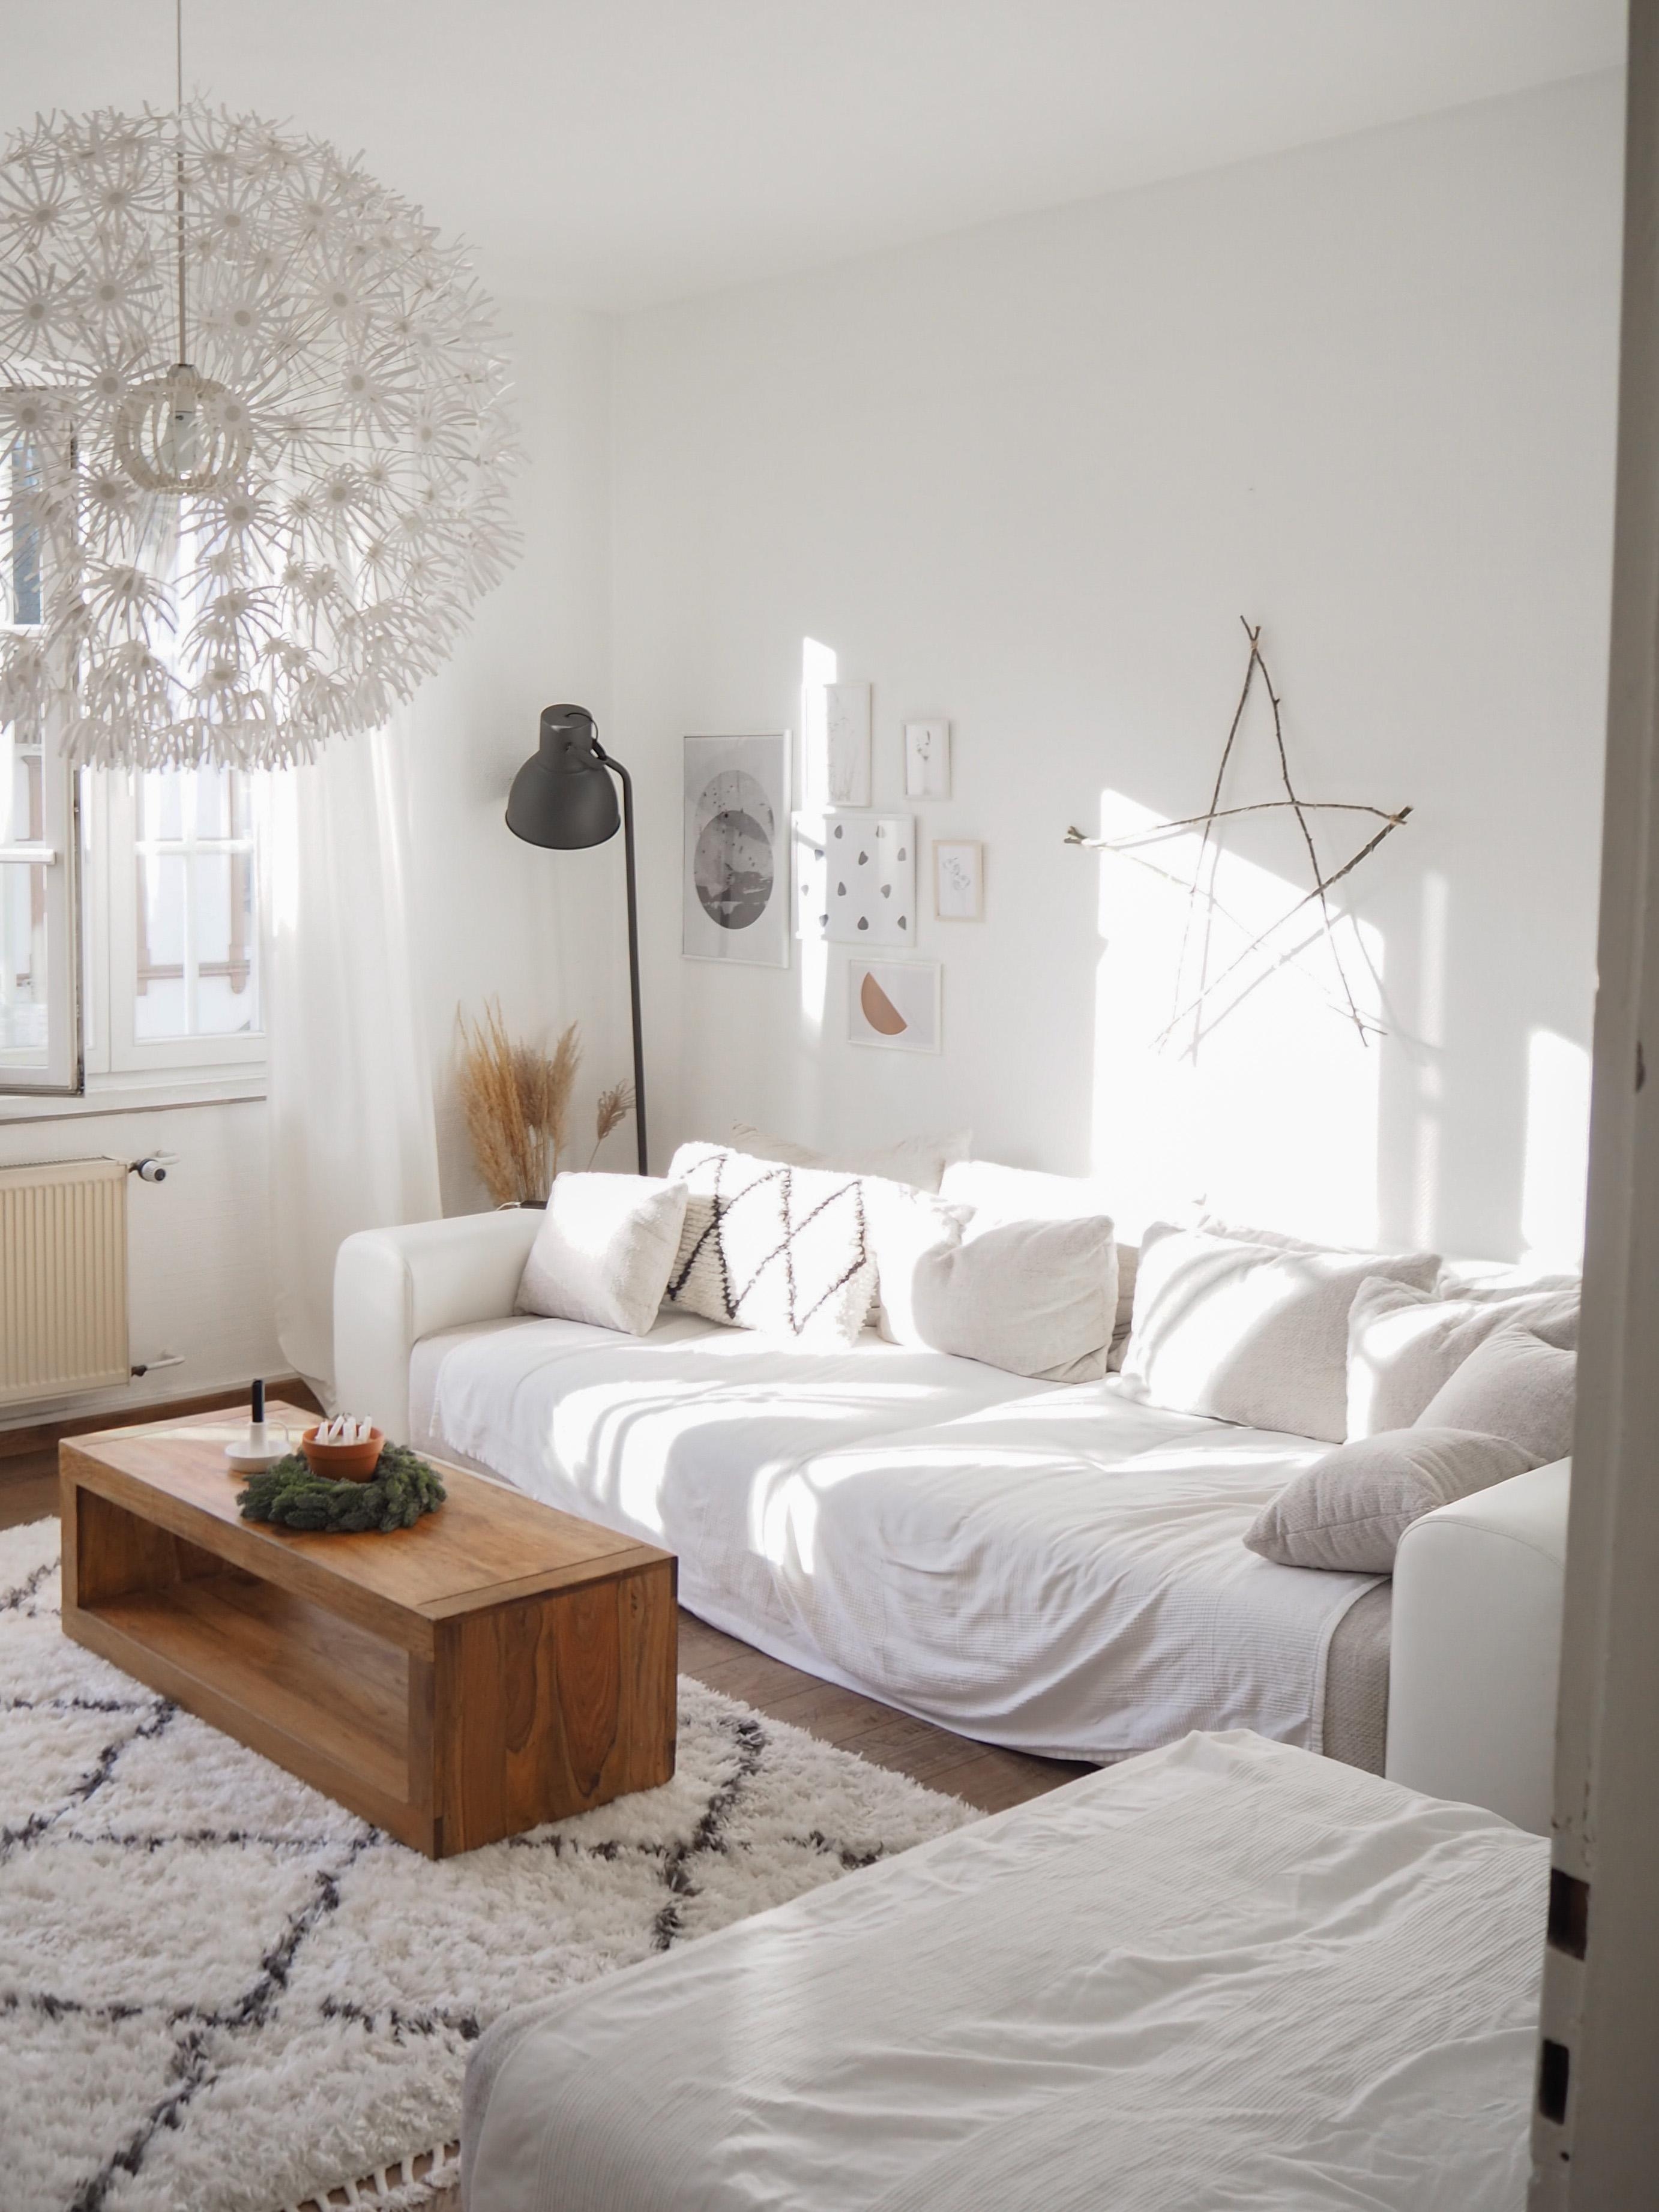 Sonnige Grüße #wohnzimmer #whiteliving #altbau #altbauliebe #altbauwohnung #wohnbereich